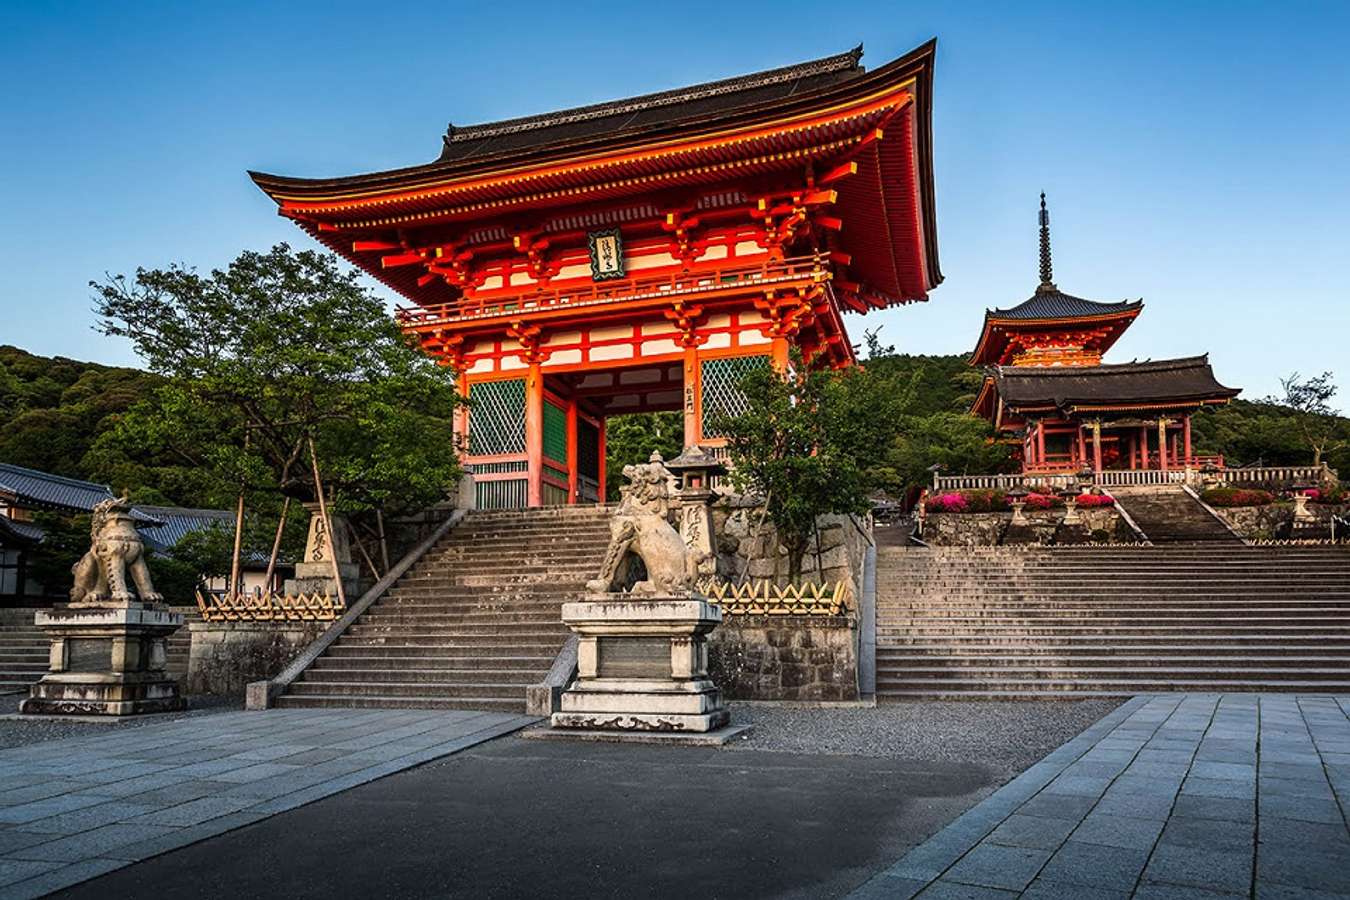 Khám phá chùa Thanh Thủy - Nét đẹp kiến trúc độc đáo tại Nhật Bản